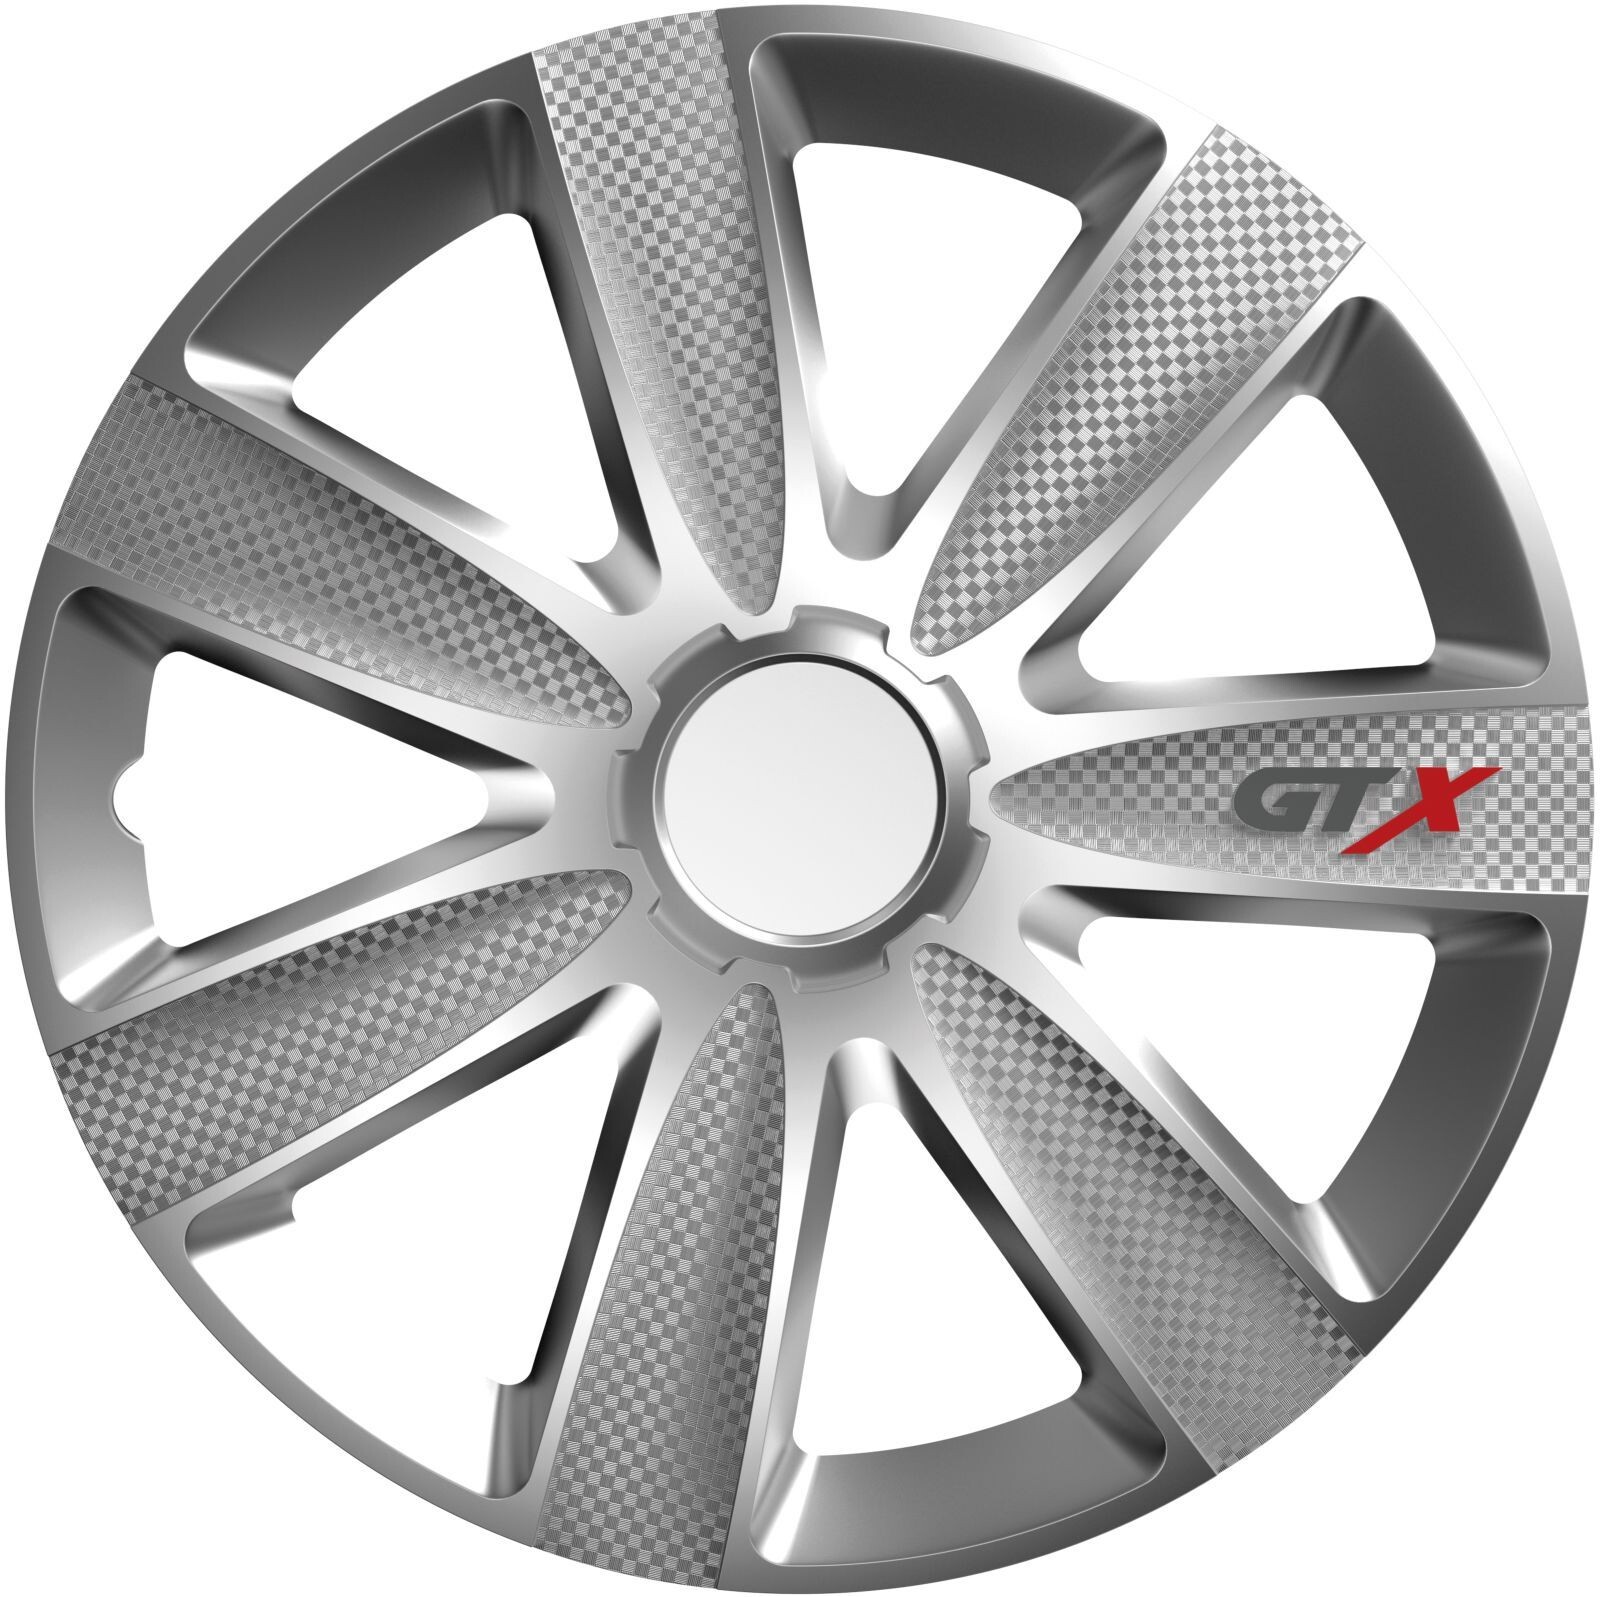 Poklice na kola pro Volkswagen GTX Carbon 14" Silver 4ks